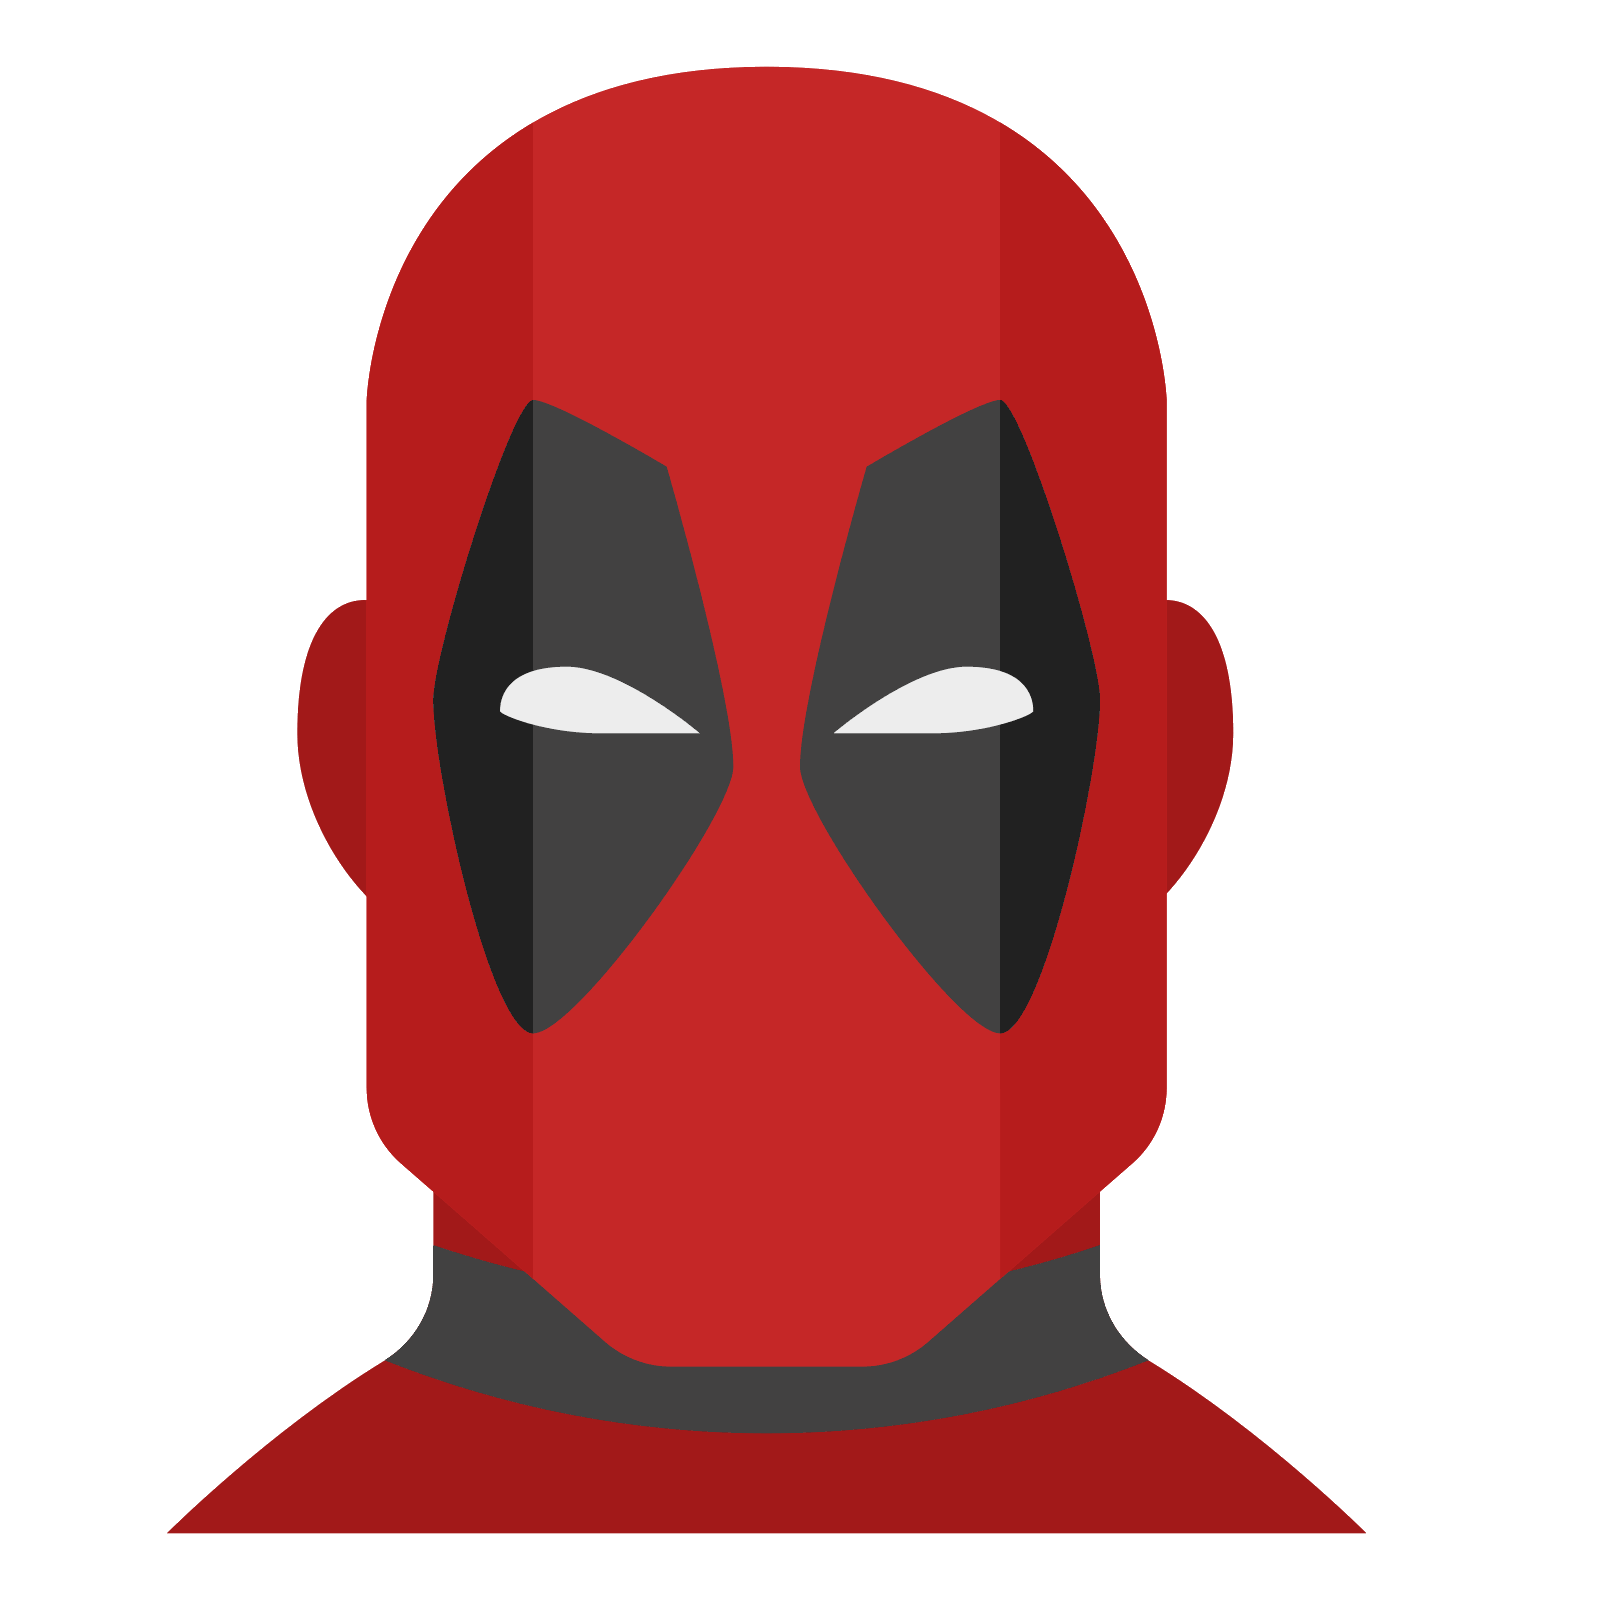 Deadpool logo Скачать PNG Image